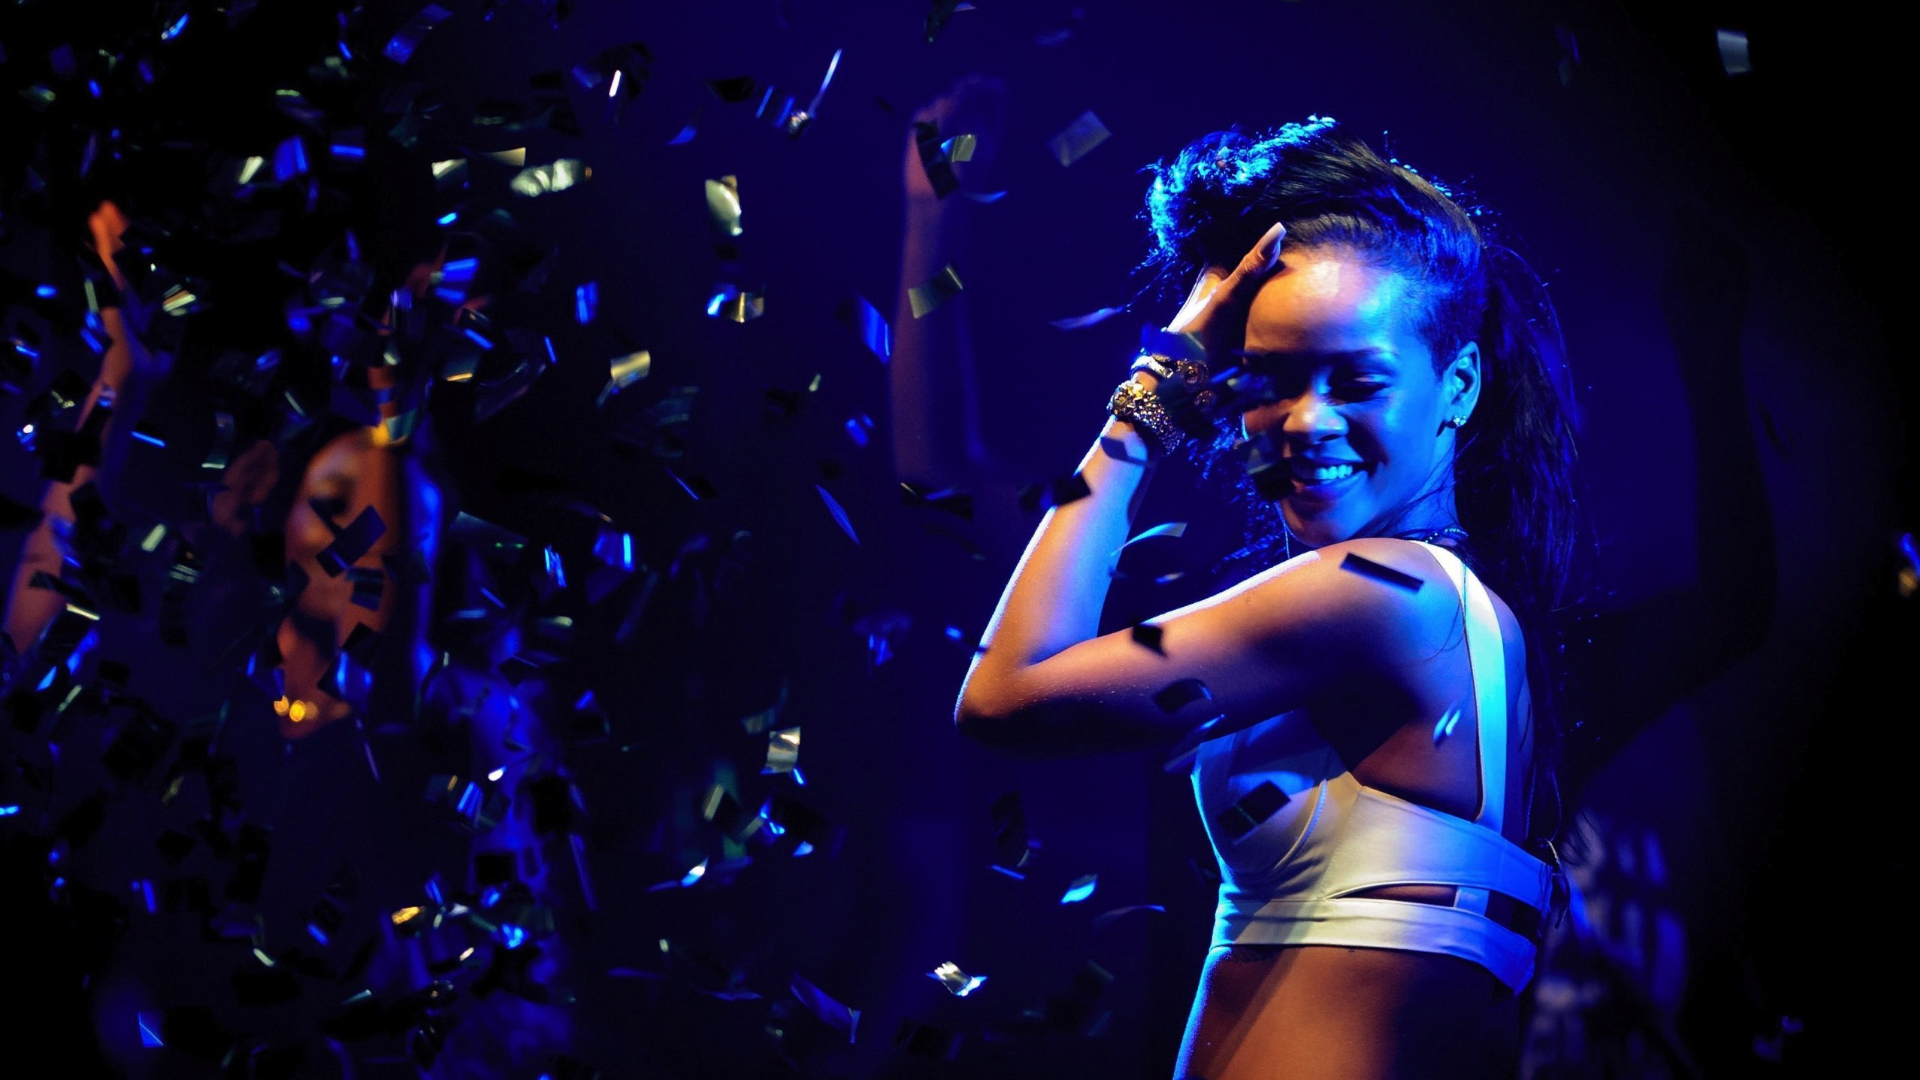 Девушки танцуют под музыку Rihanna - Umbrella (REMIX) 1080 HD #Shuffle #Dance